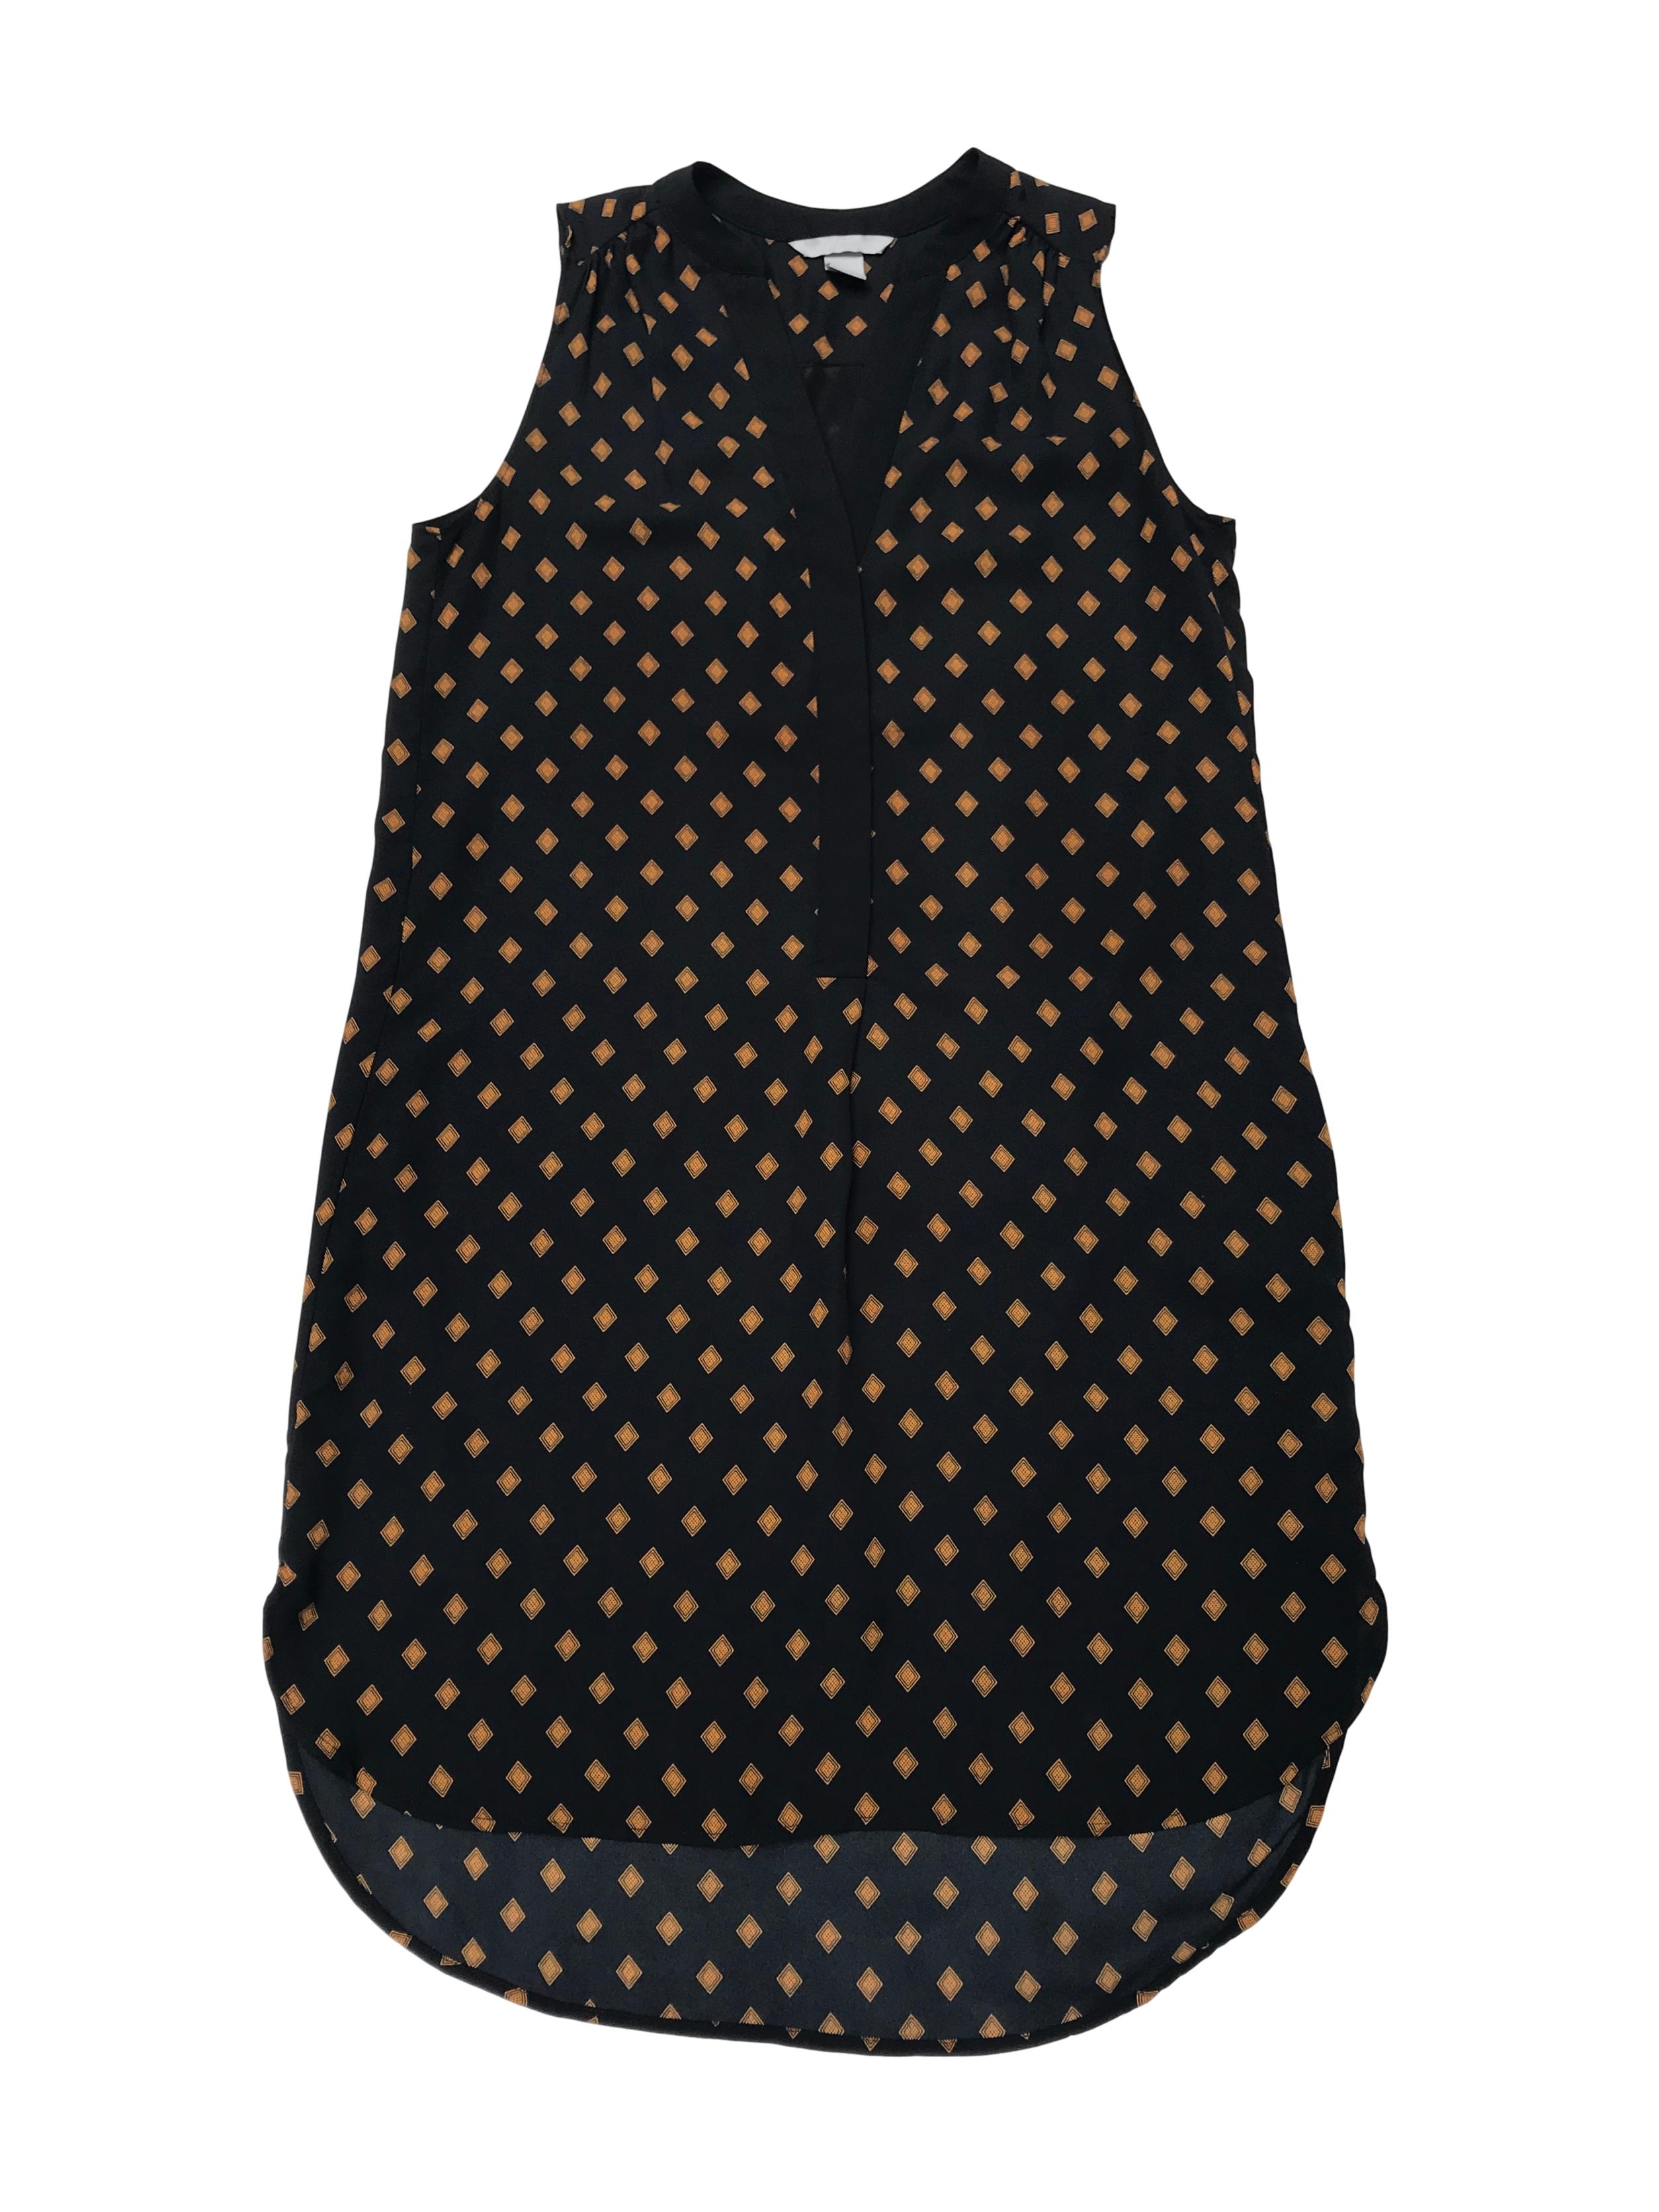 Vestido H&M de gasa negra con rombos mostaza, escote en V con botones, lleva forro. Largo 93cm